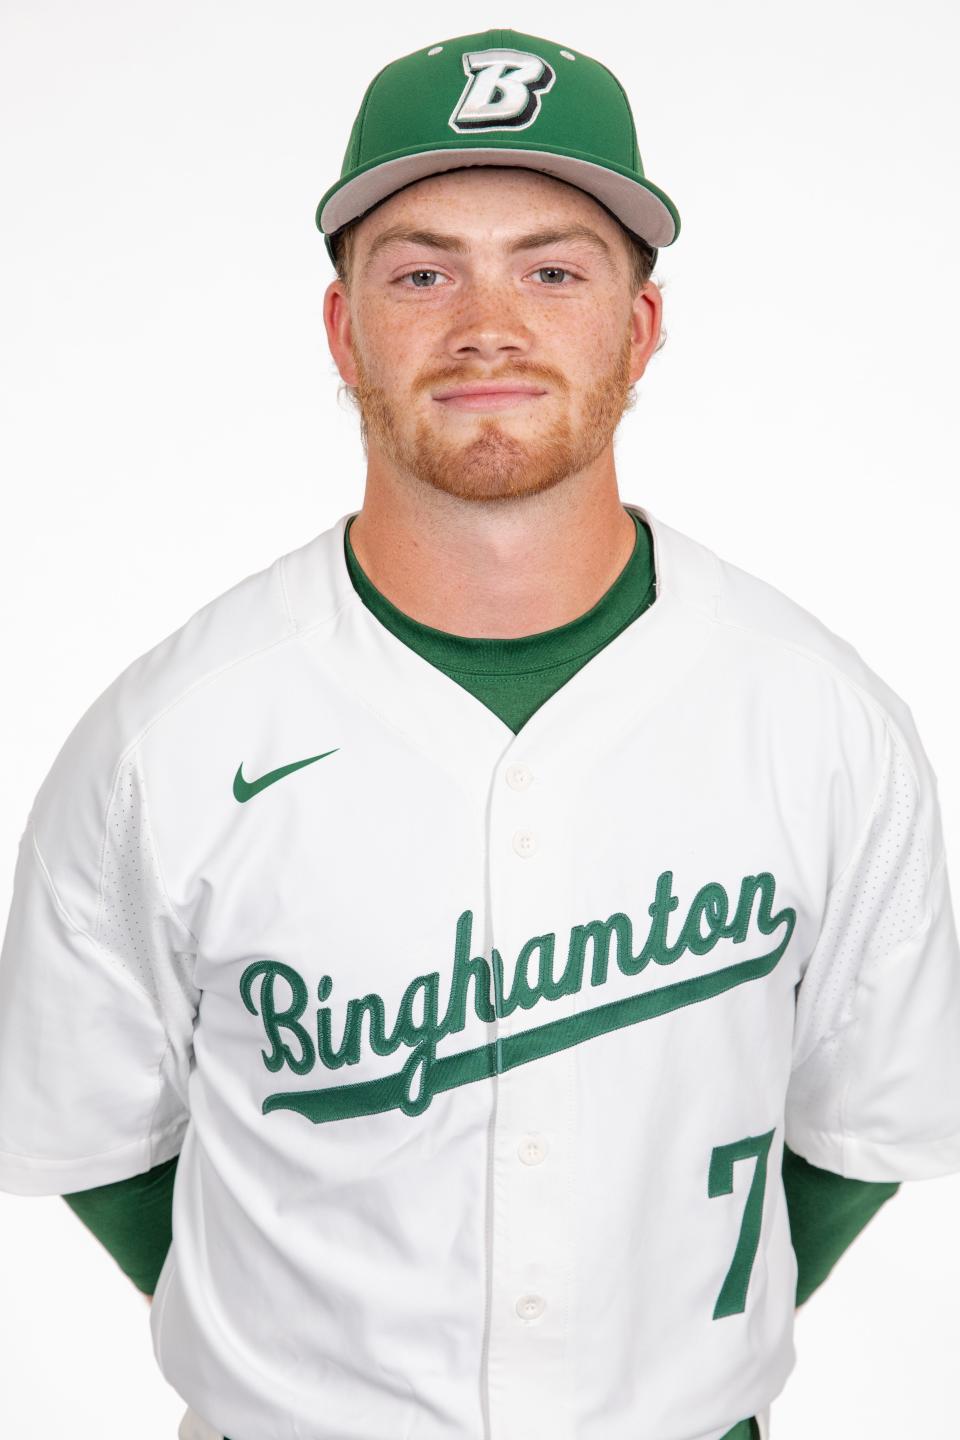 Logan Haskell, Susquehanna Valley grad/BU outfielder.